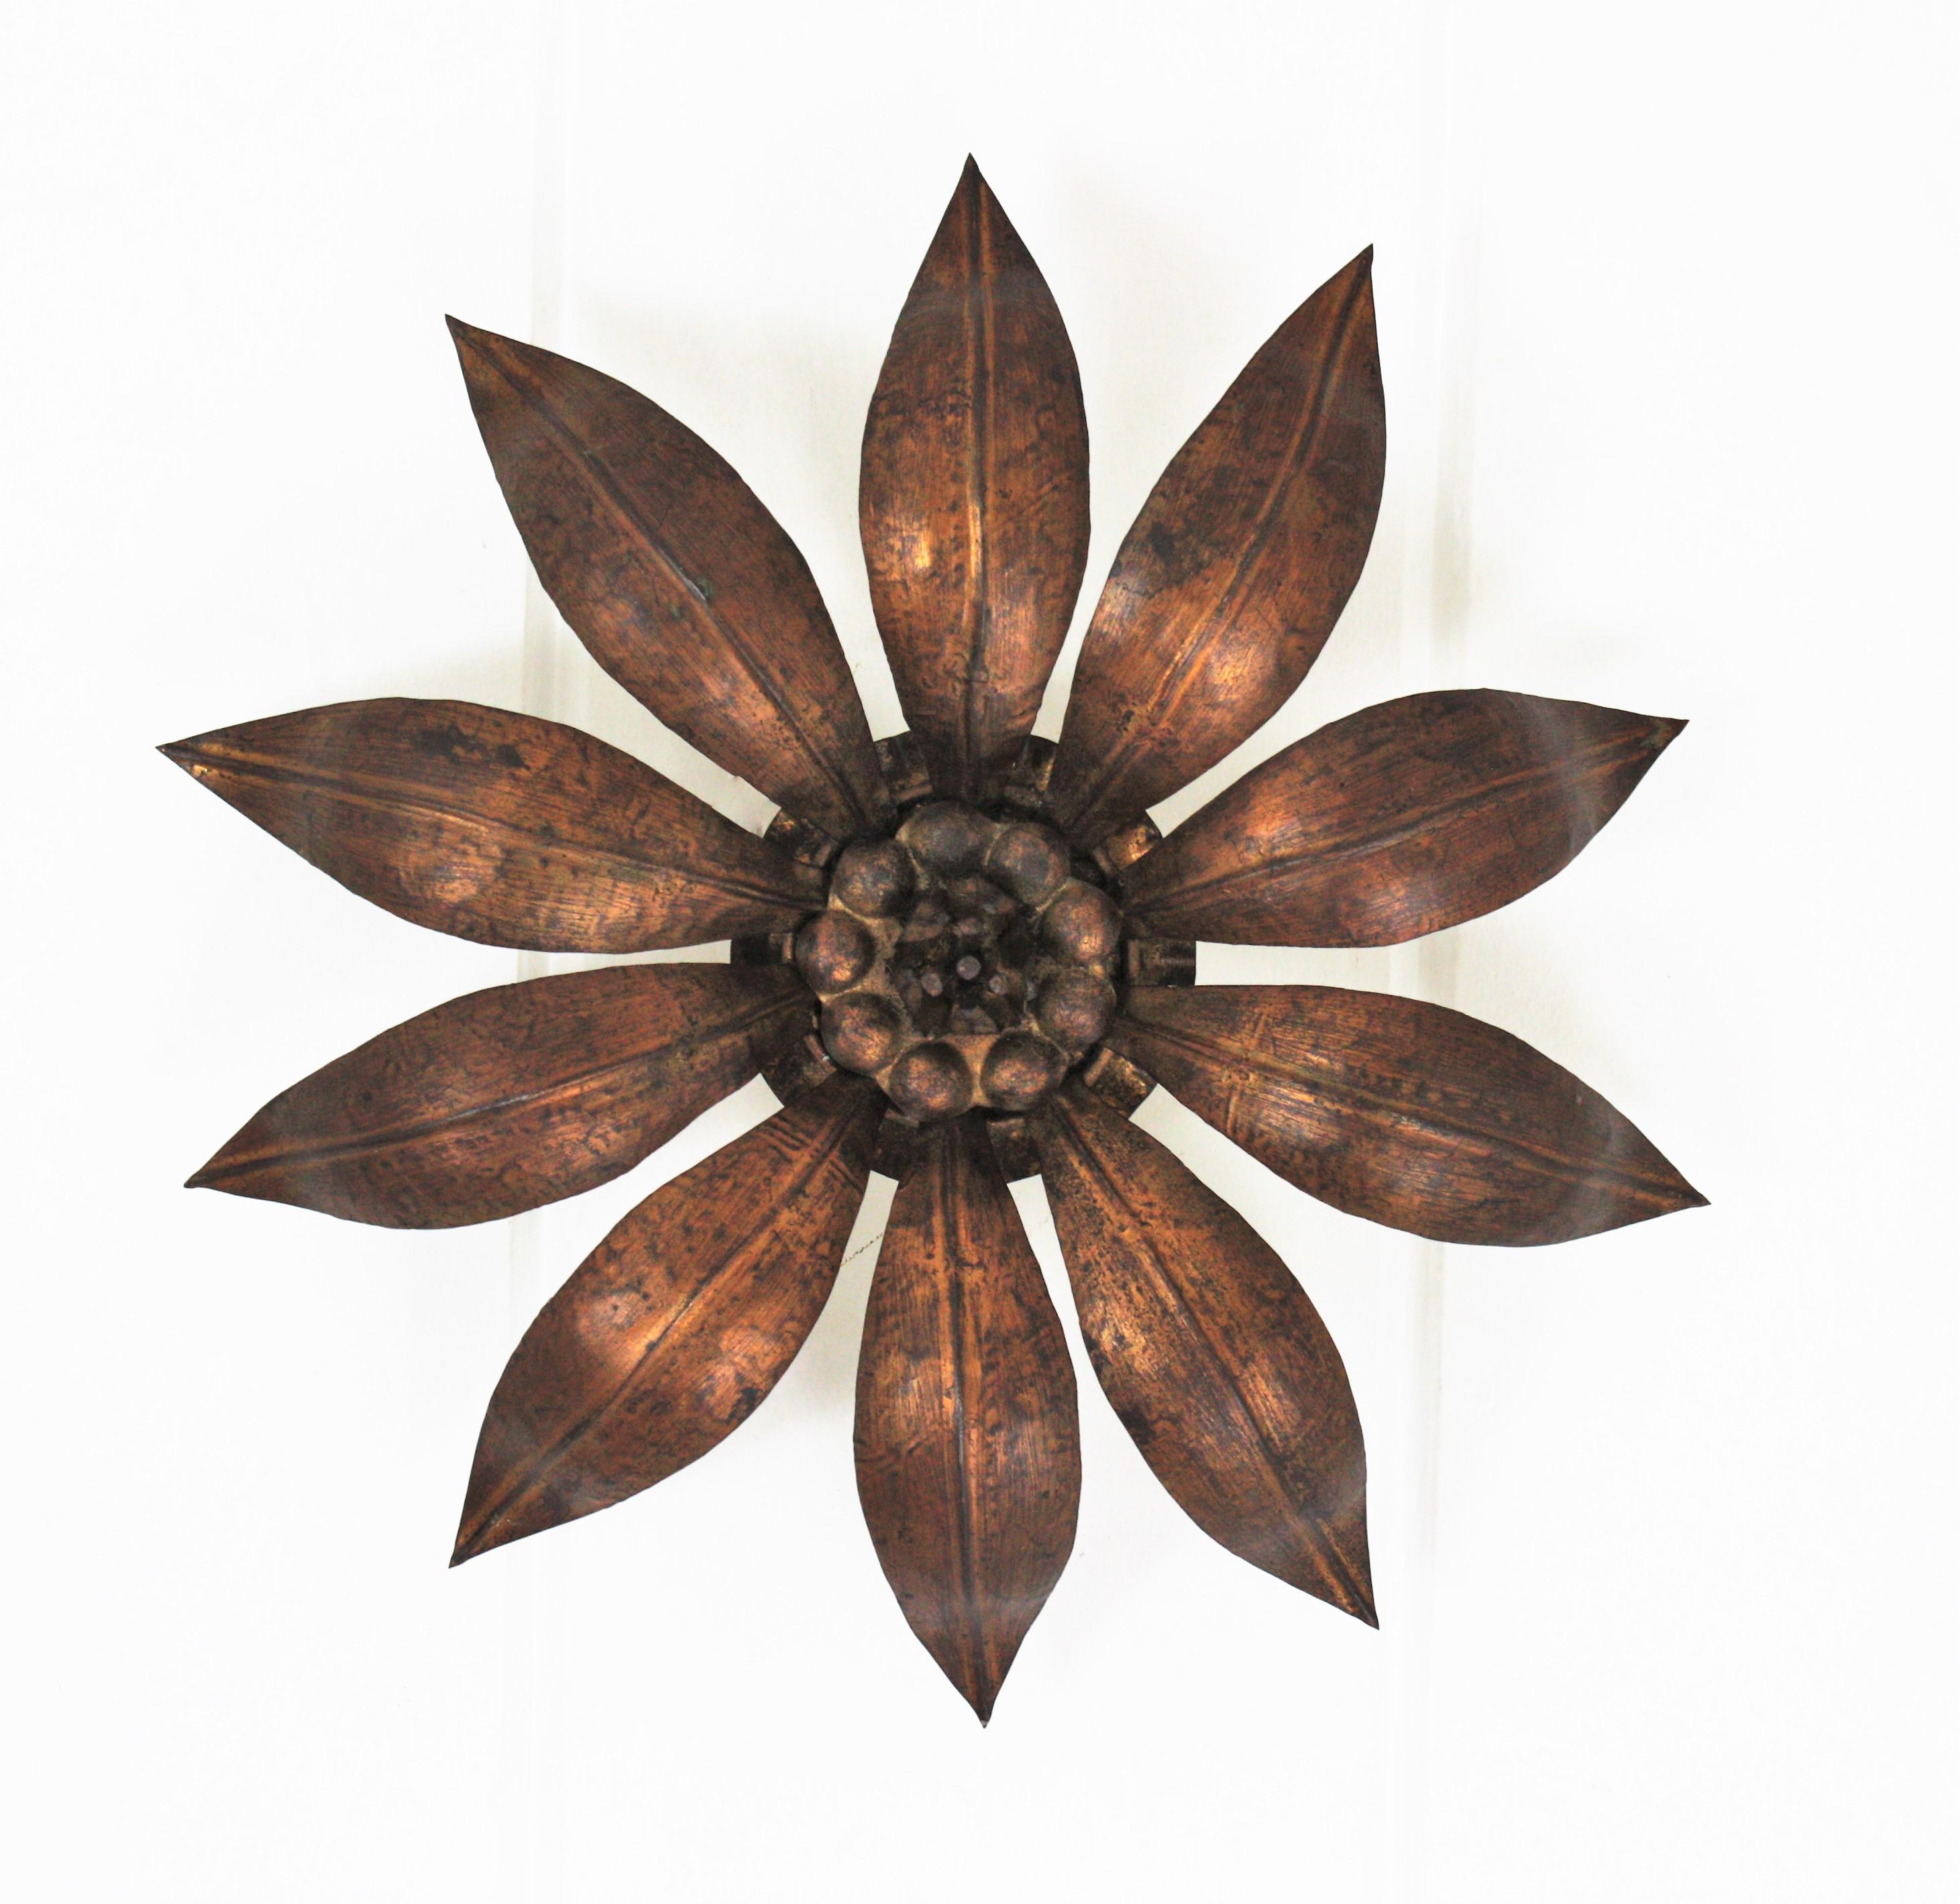 French Sunburst Flower Ceiling Light Fixture in Bronze Gilt Iron, 1940s For Sale 3